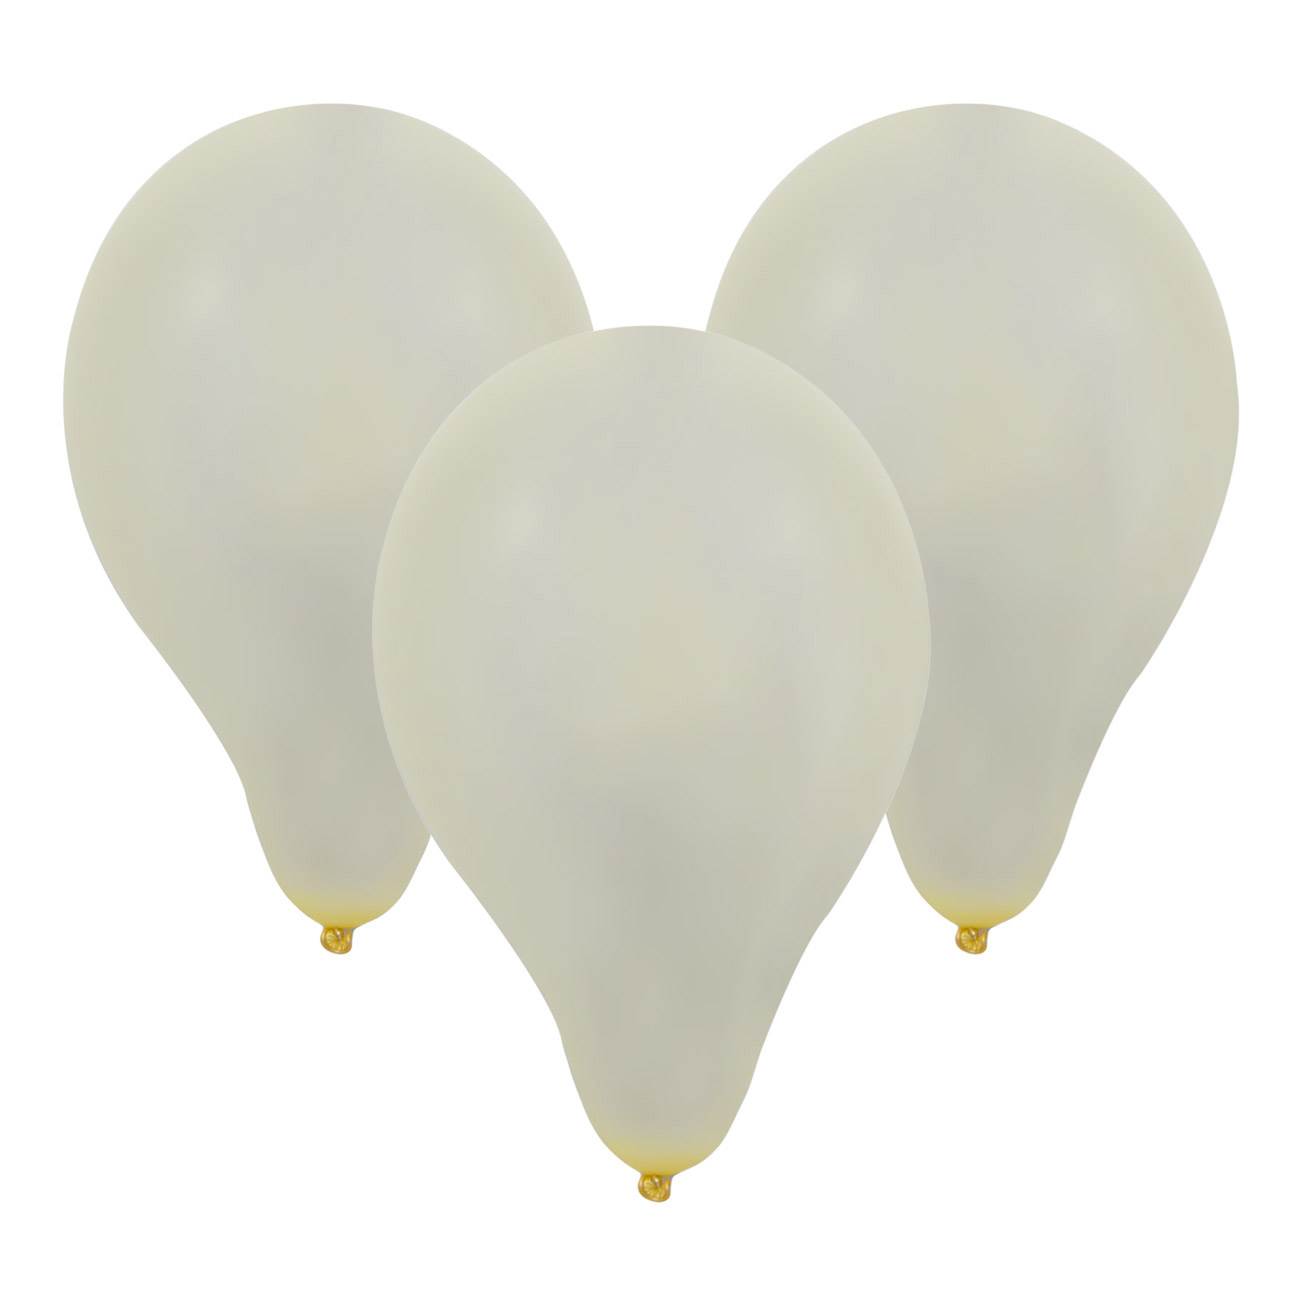 Μπαλόνια Σε Συσκευασία Λευκά Με Χρυσό Τελείωμα Balloons In Packaging White With Gold Finish 10pcs